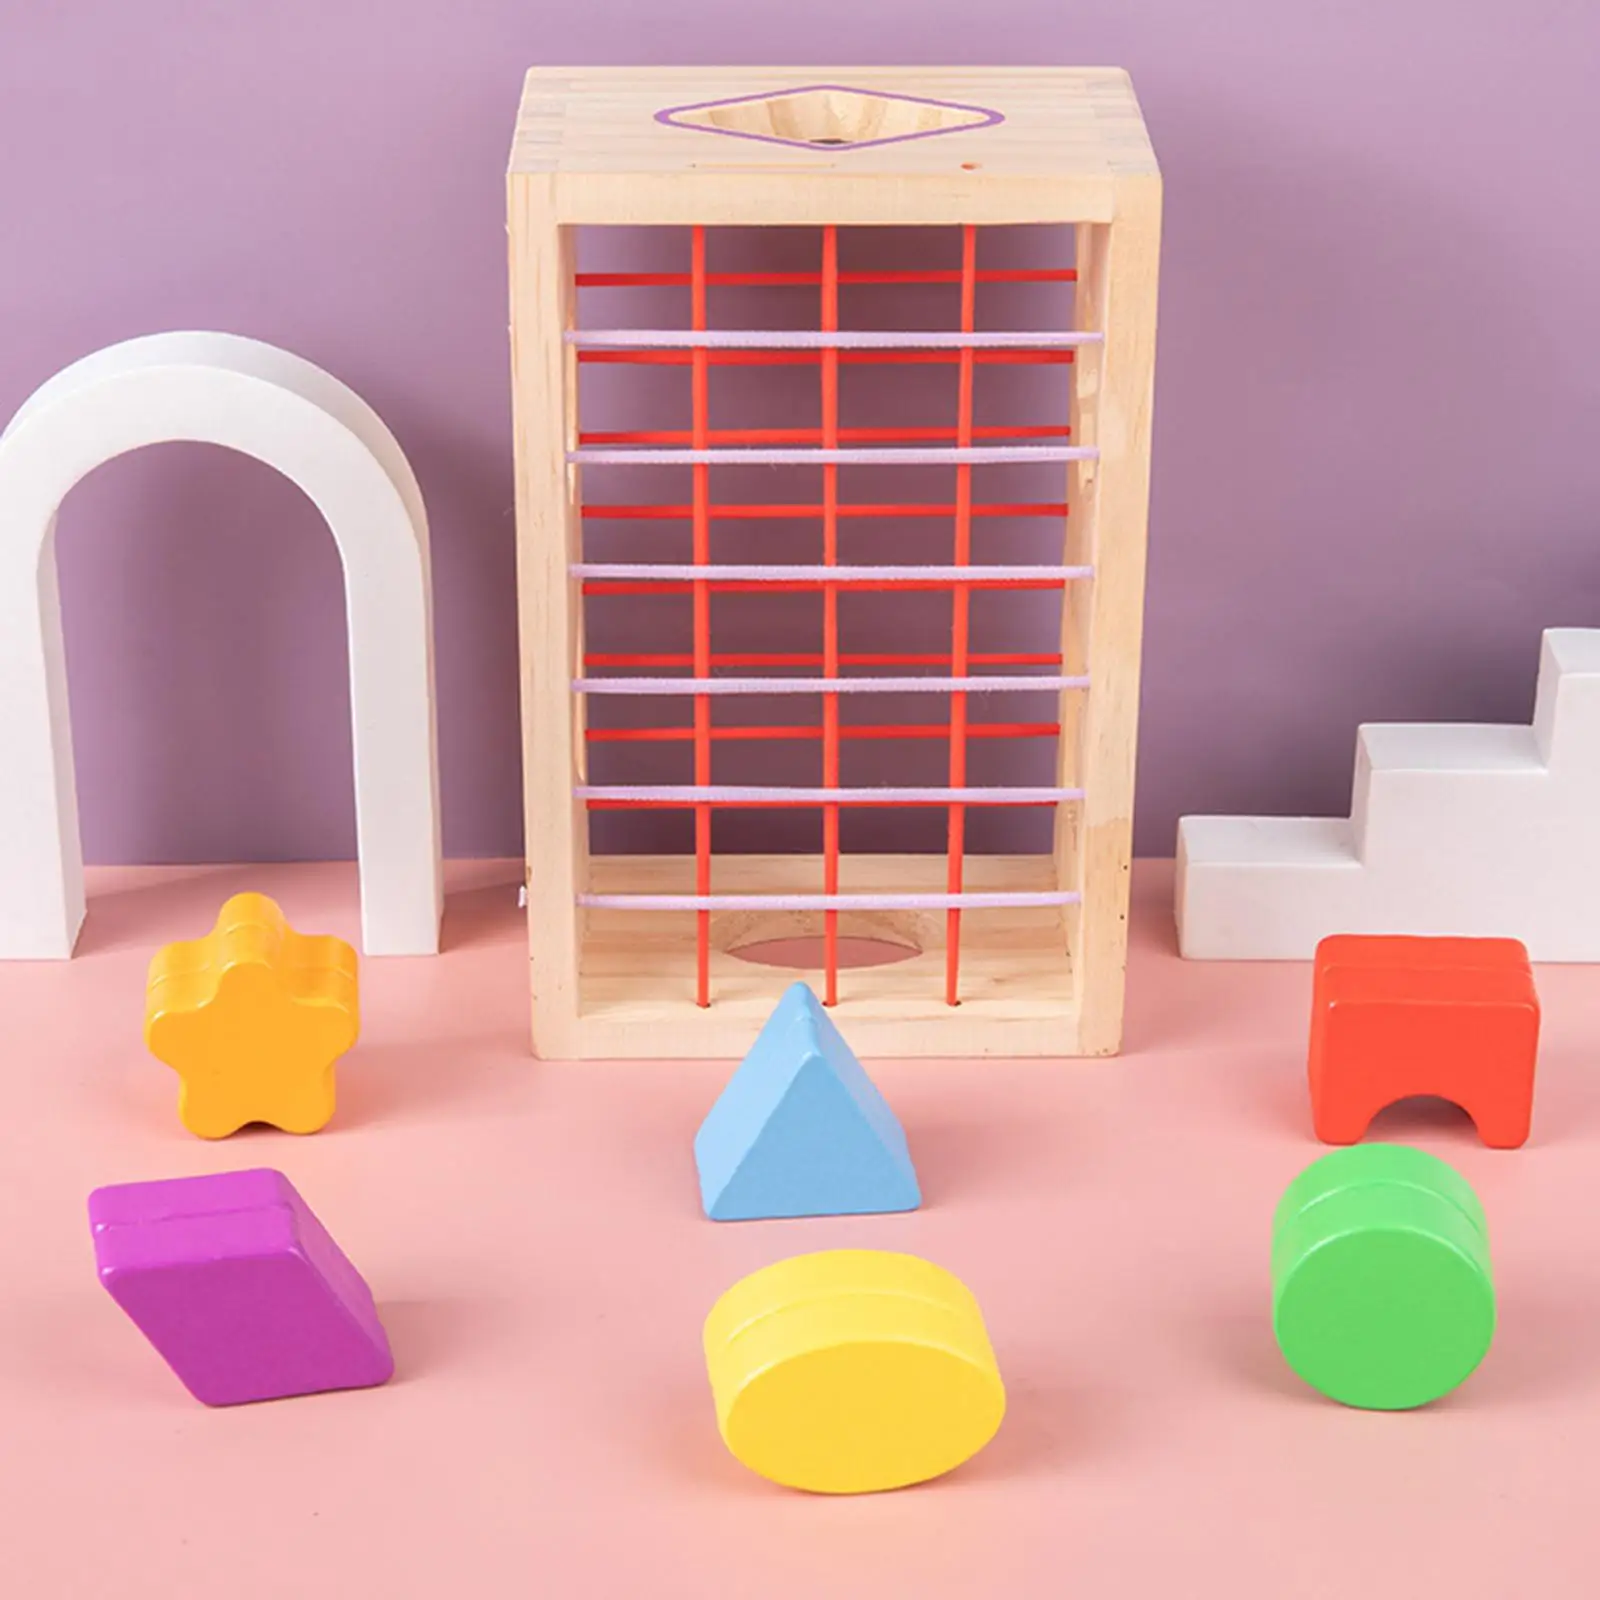 Wooden Sensory Bin Montessori Construction Fun Knowledge Plug-In Box Color Sensory Cognition Puzzle Shape Sorting Cube Preschool